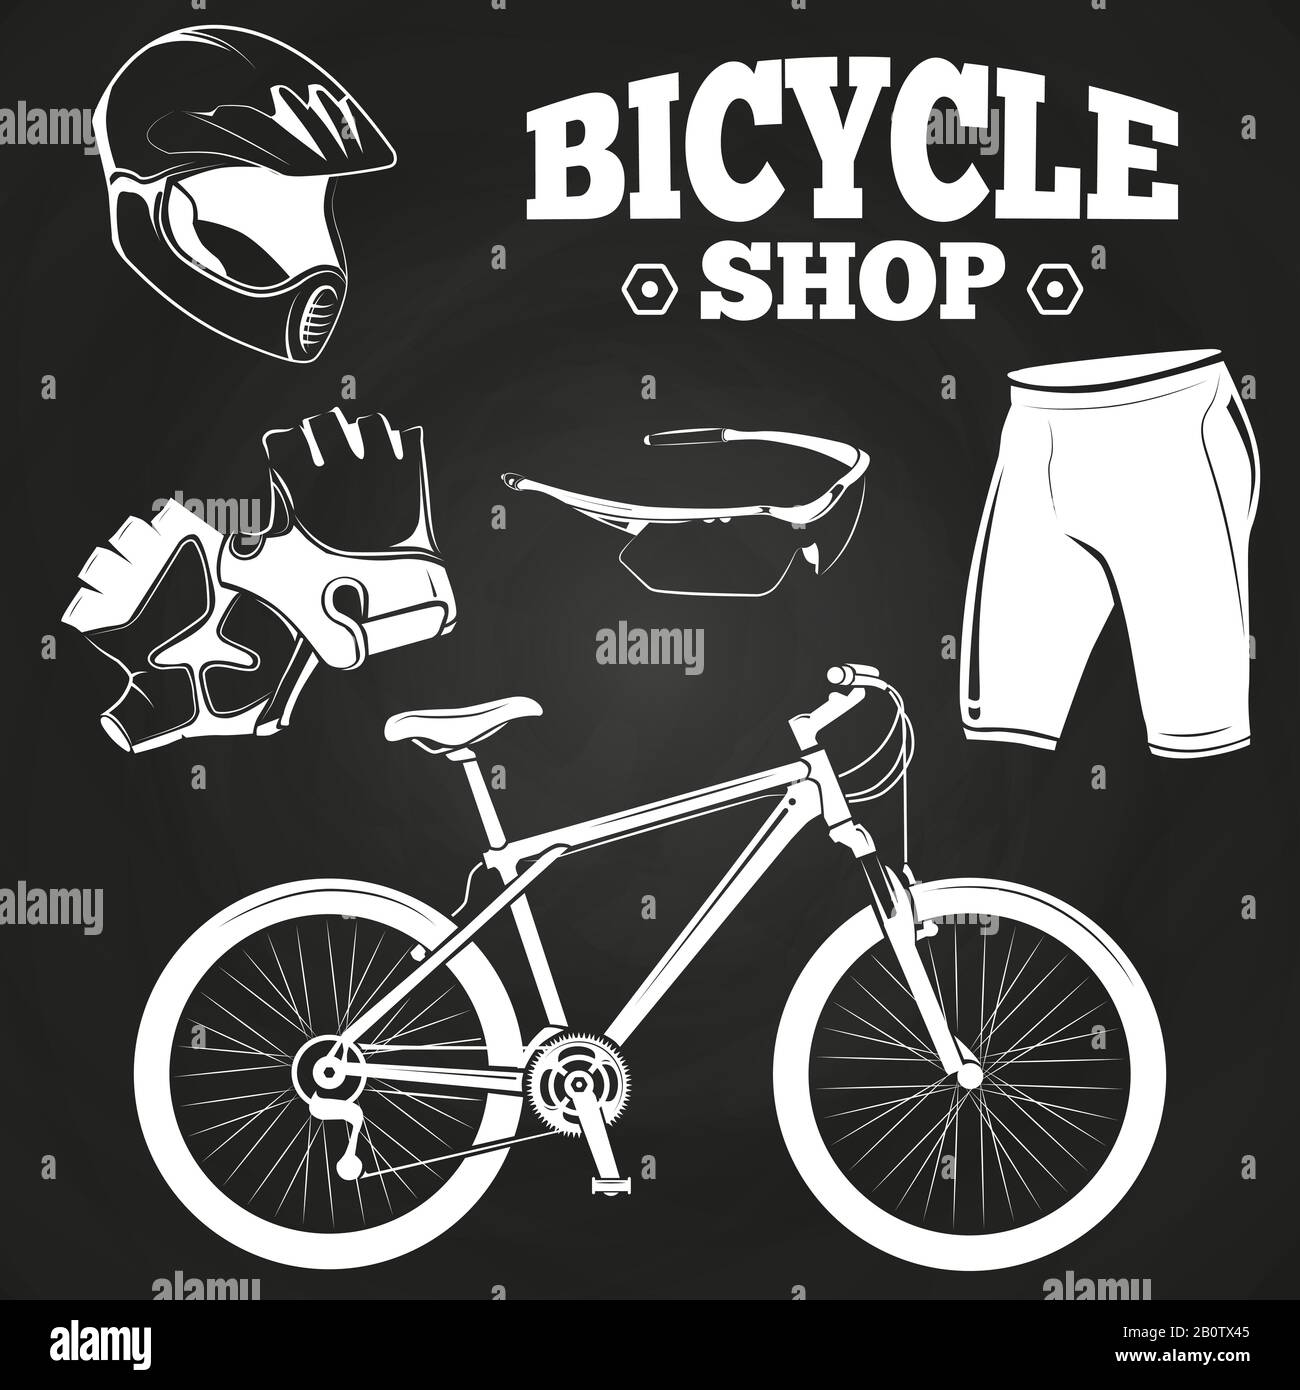 Fahrradshop Produkte auf Tafel - Helm, Fahrrad, Handschuhe. Vektorgrafiken Stock Vektor